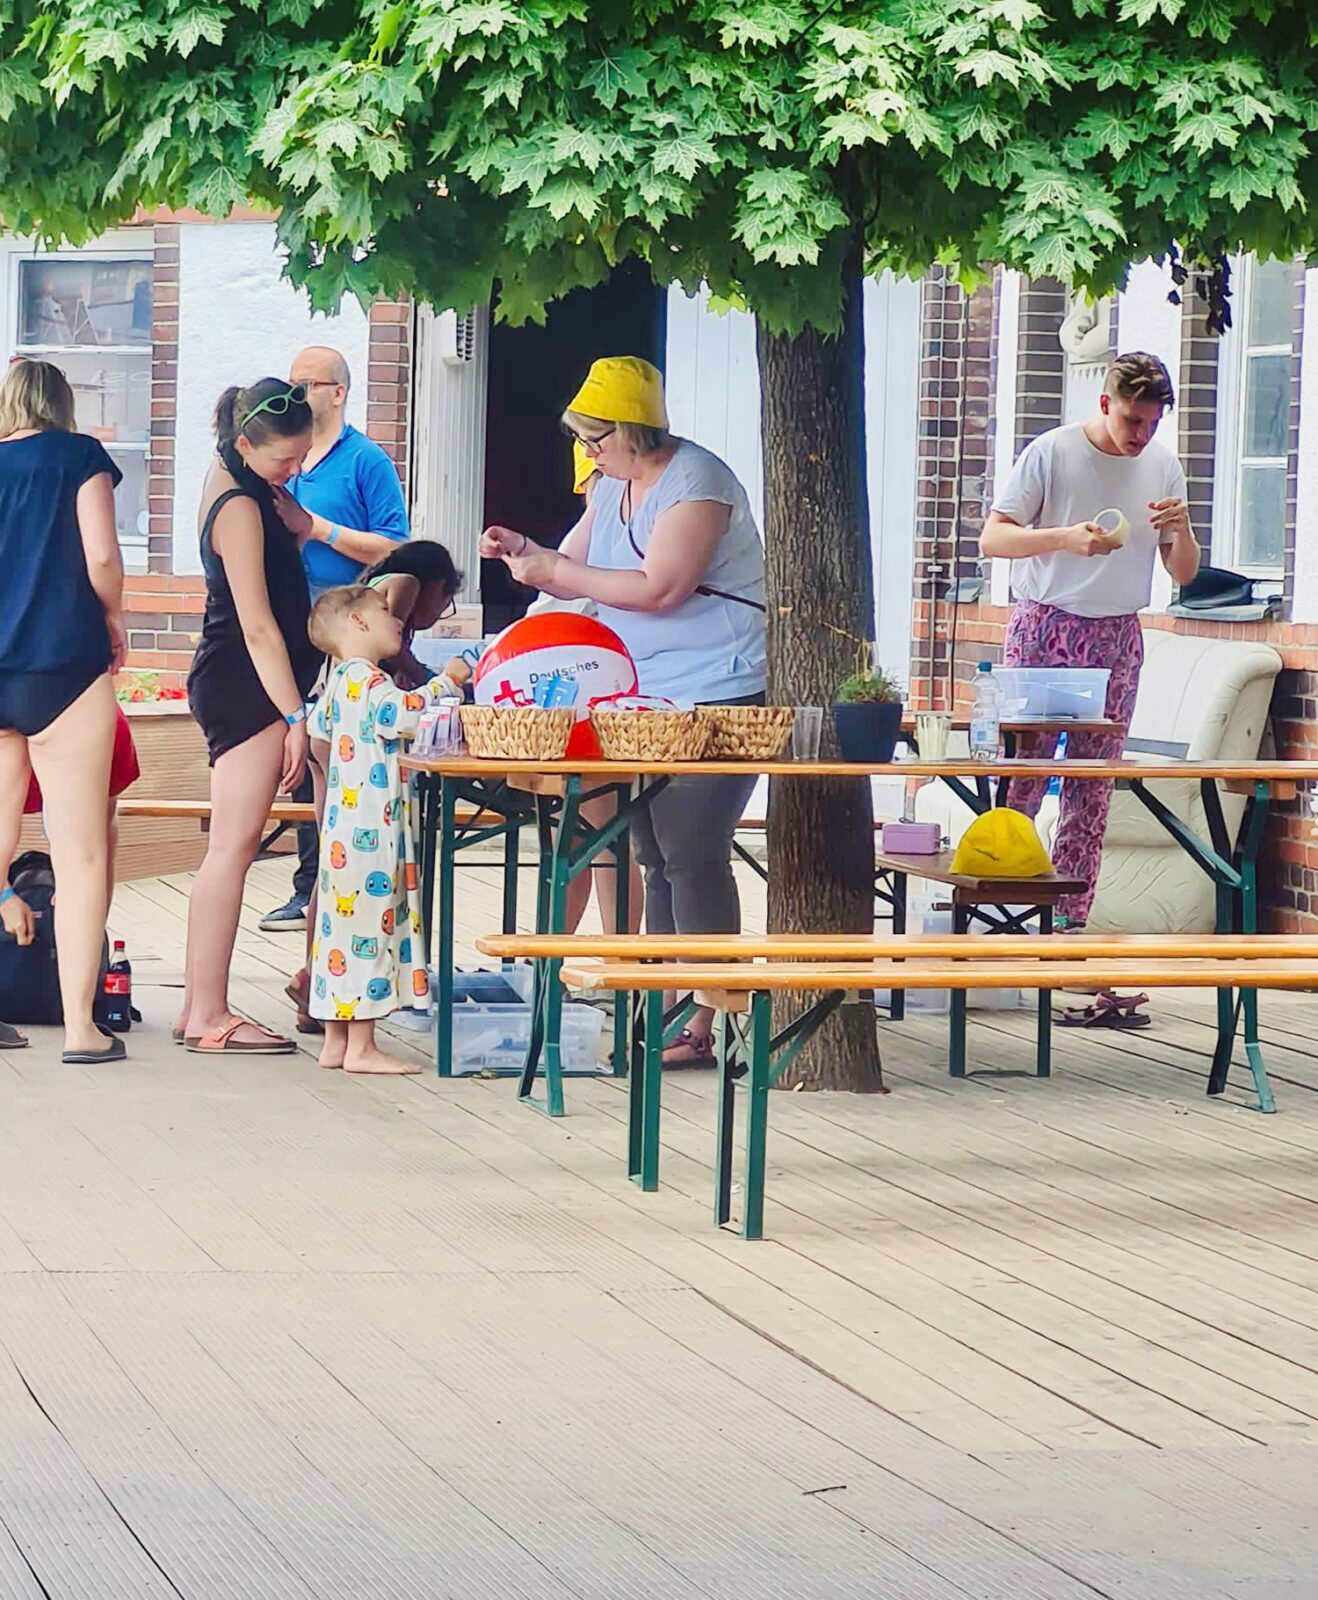 Kinderbastelstand beim inklusiven Strandtag im Strandbad Plötzensee, ein Bastelstand für Kinder. Foto: Viktoria Eckert